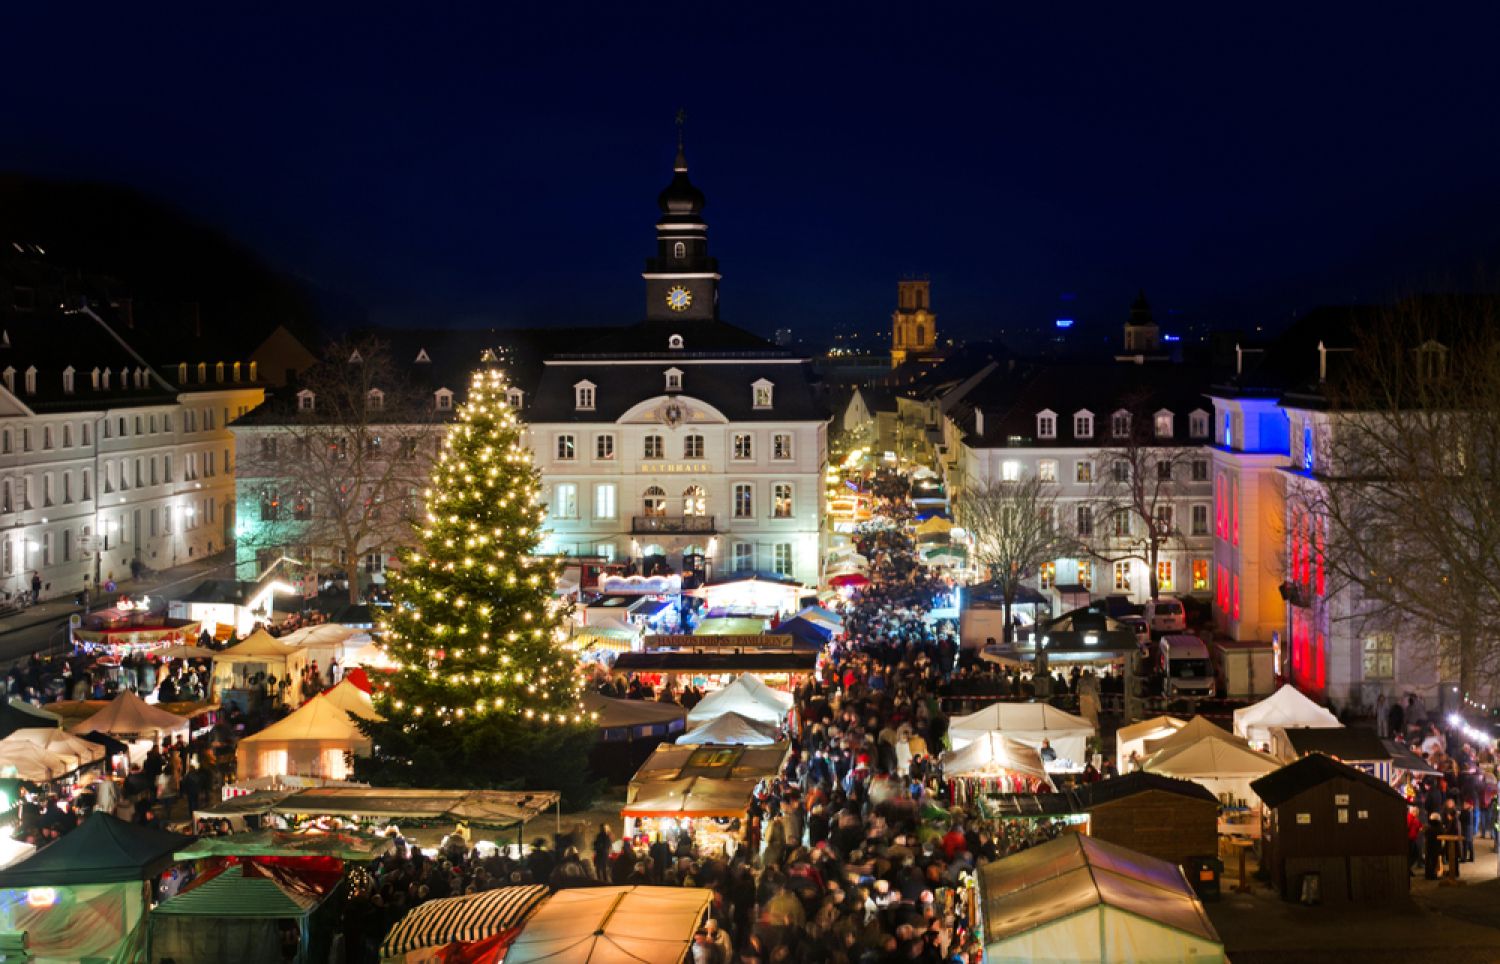 Le marché de Noël de Sarrebruck est reporté